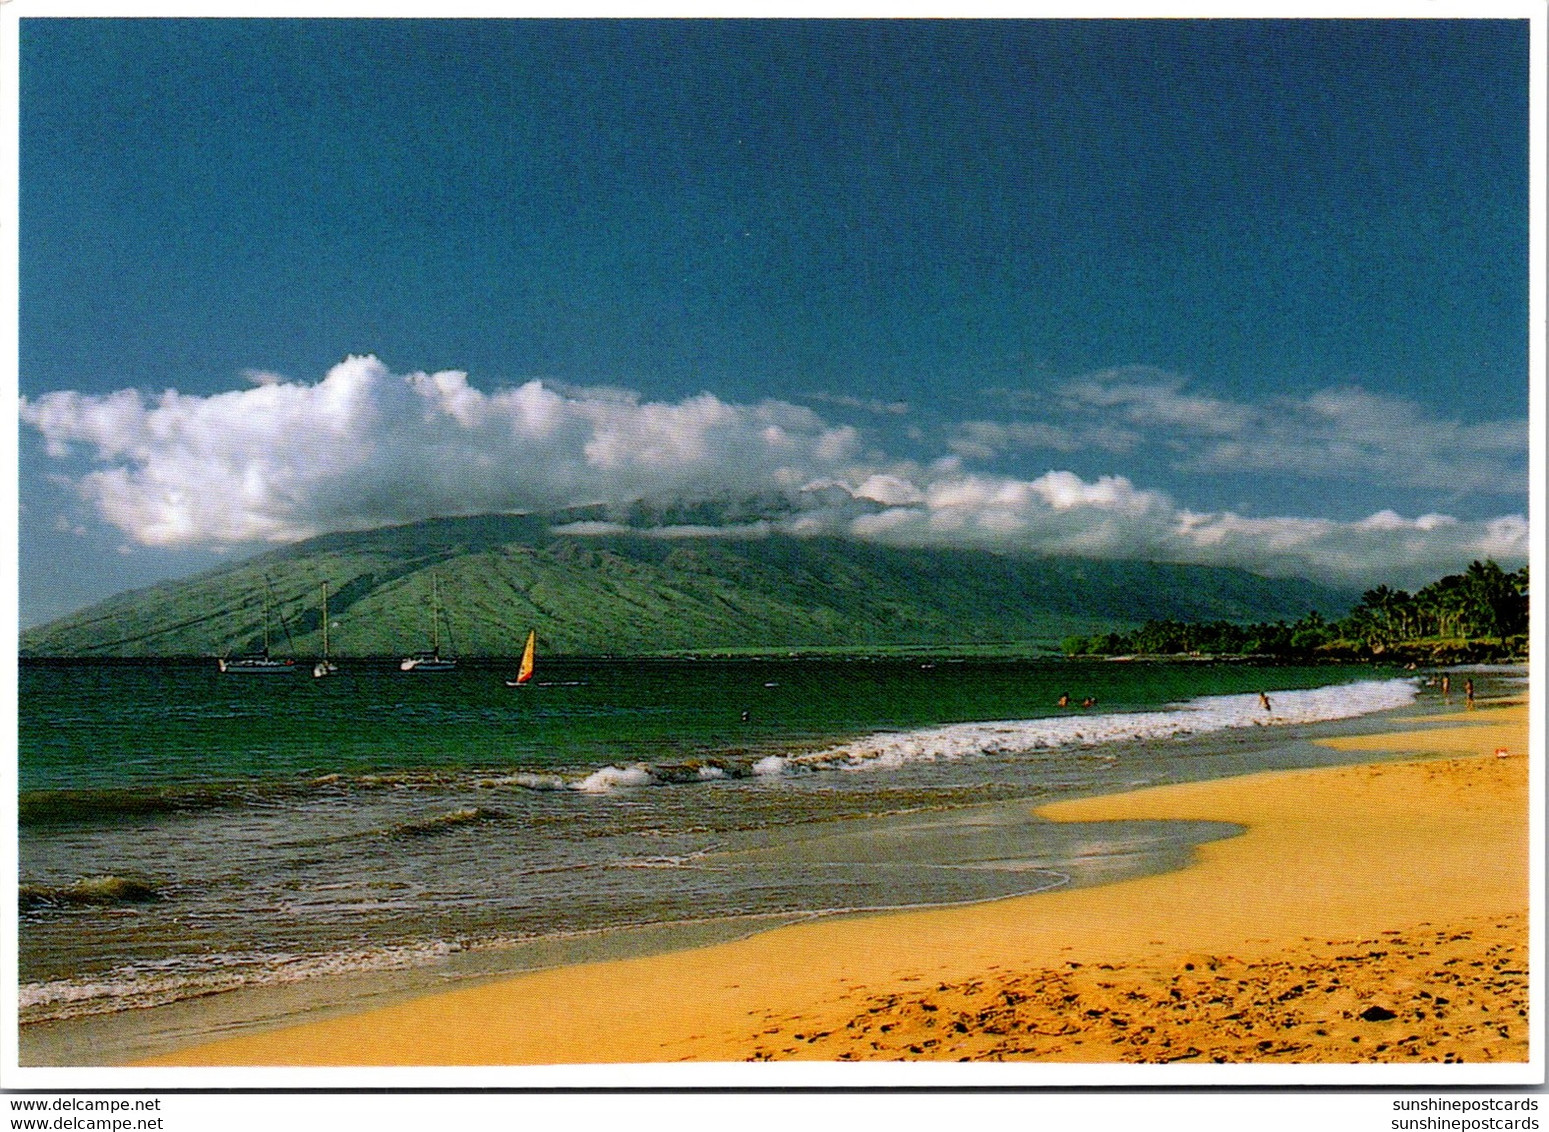 Hawaii Maui Kihei Beach View - Maui